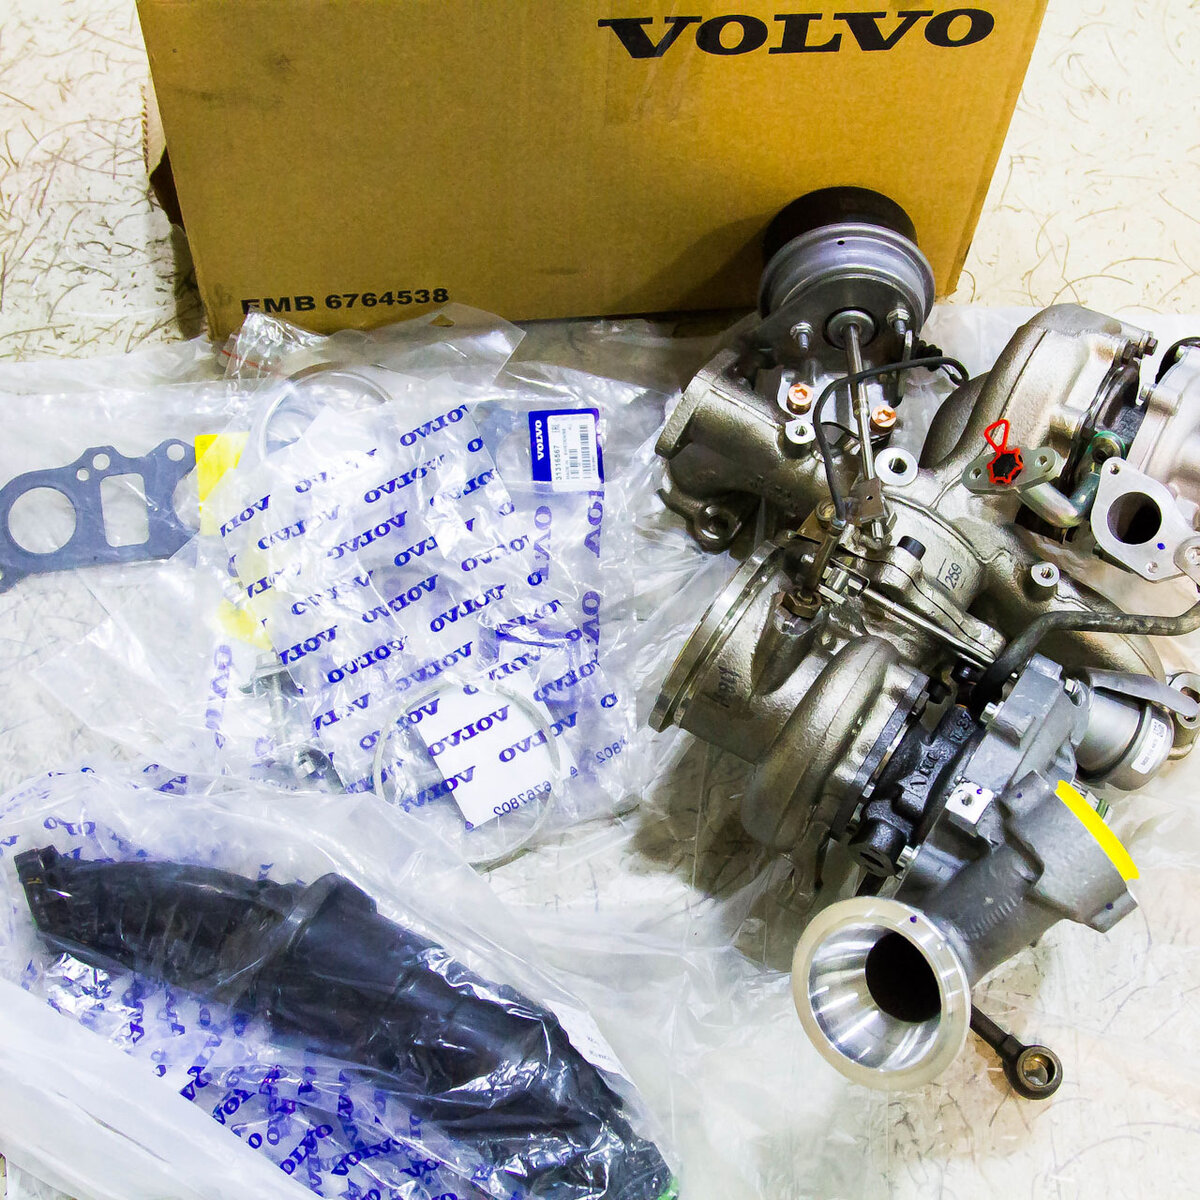 Volvo XC90 new 2015 2,0 дизель Поломка турбин. Частный случай или закономерность?